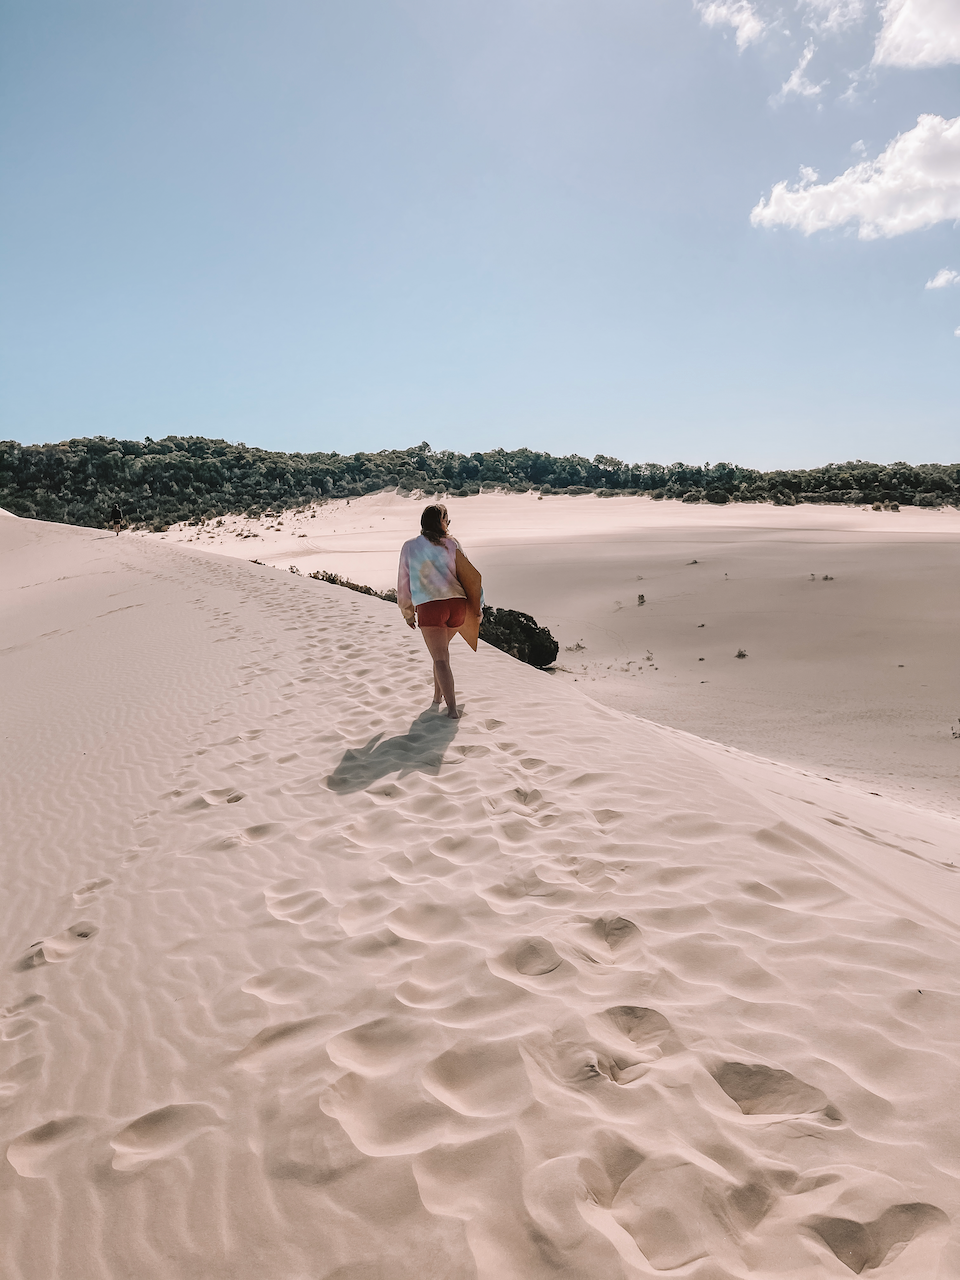 Mon amie qui marche sur les dunes de sable - Île de Moreton - Queensland - Australie